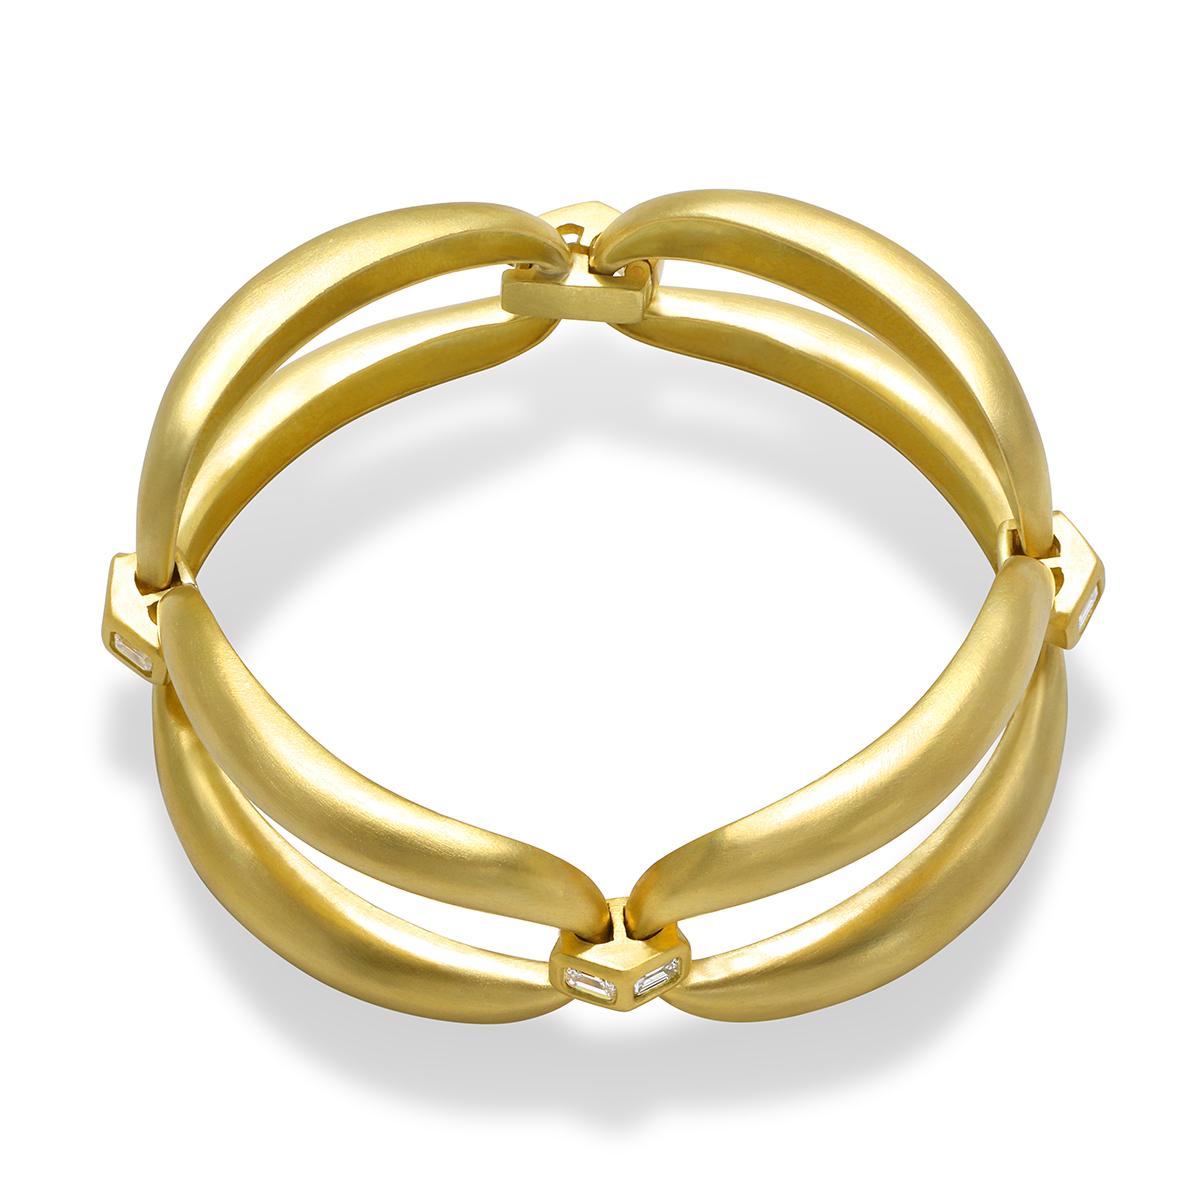 Das handgefertigte 18 Karat Gold Diamond Dome Link Bracelet von Faye Kim ist modern und zeitlos zugleich. Es besteht aus vier offenen, gewölbten Gliedern, die fachmännisch durch mit Smaragden besetzte Akzente verbunden sind. Die Glieder sind